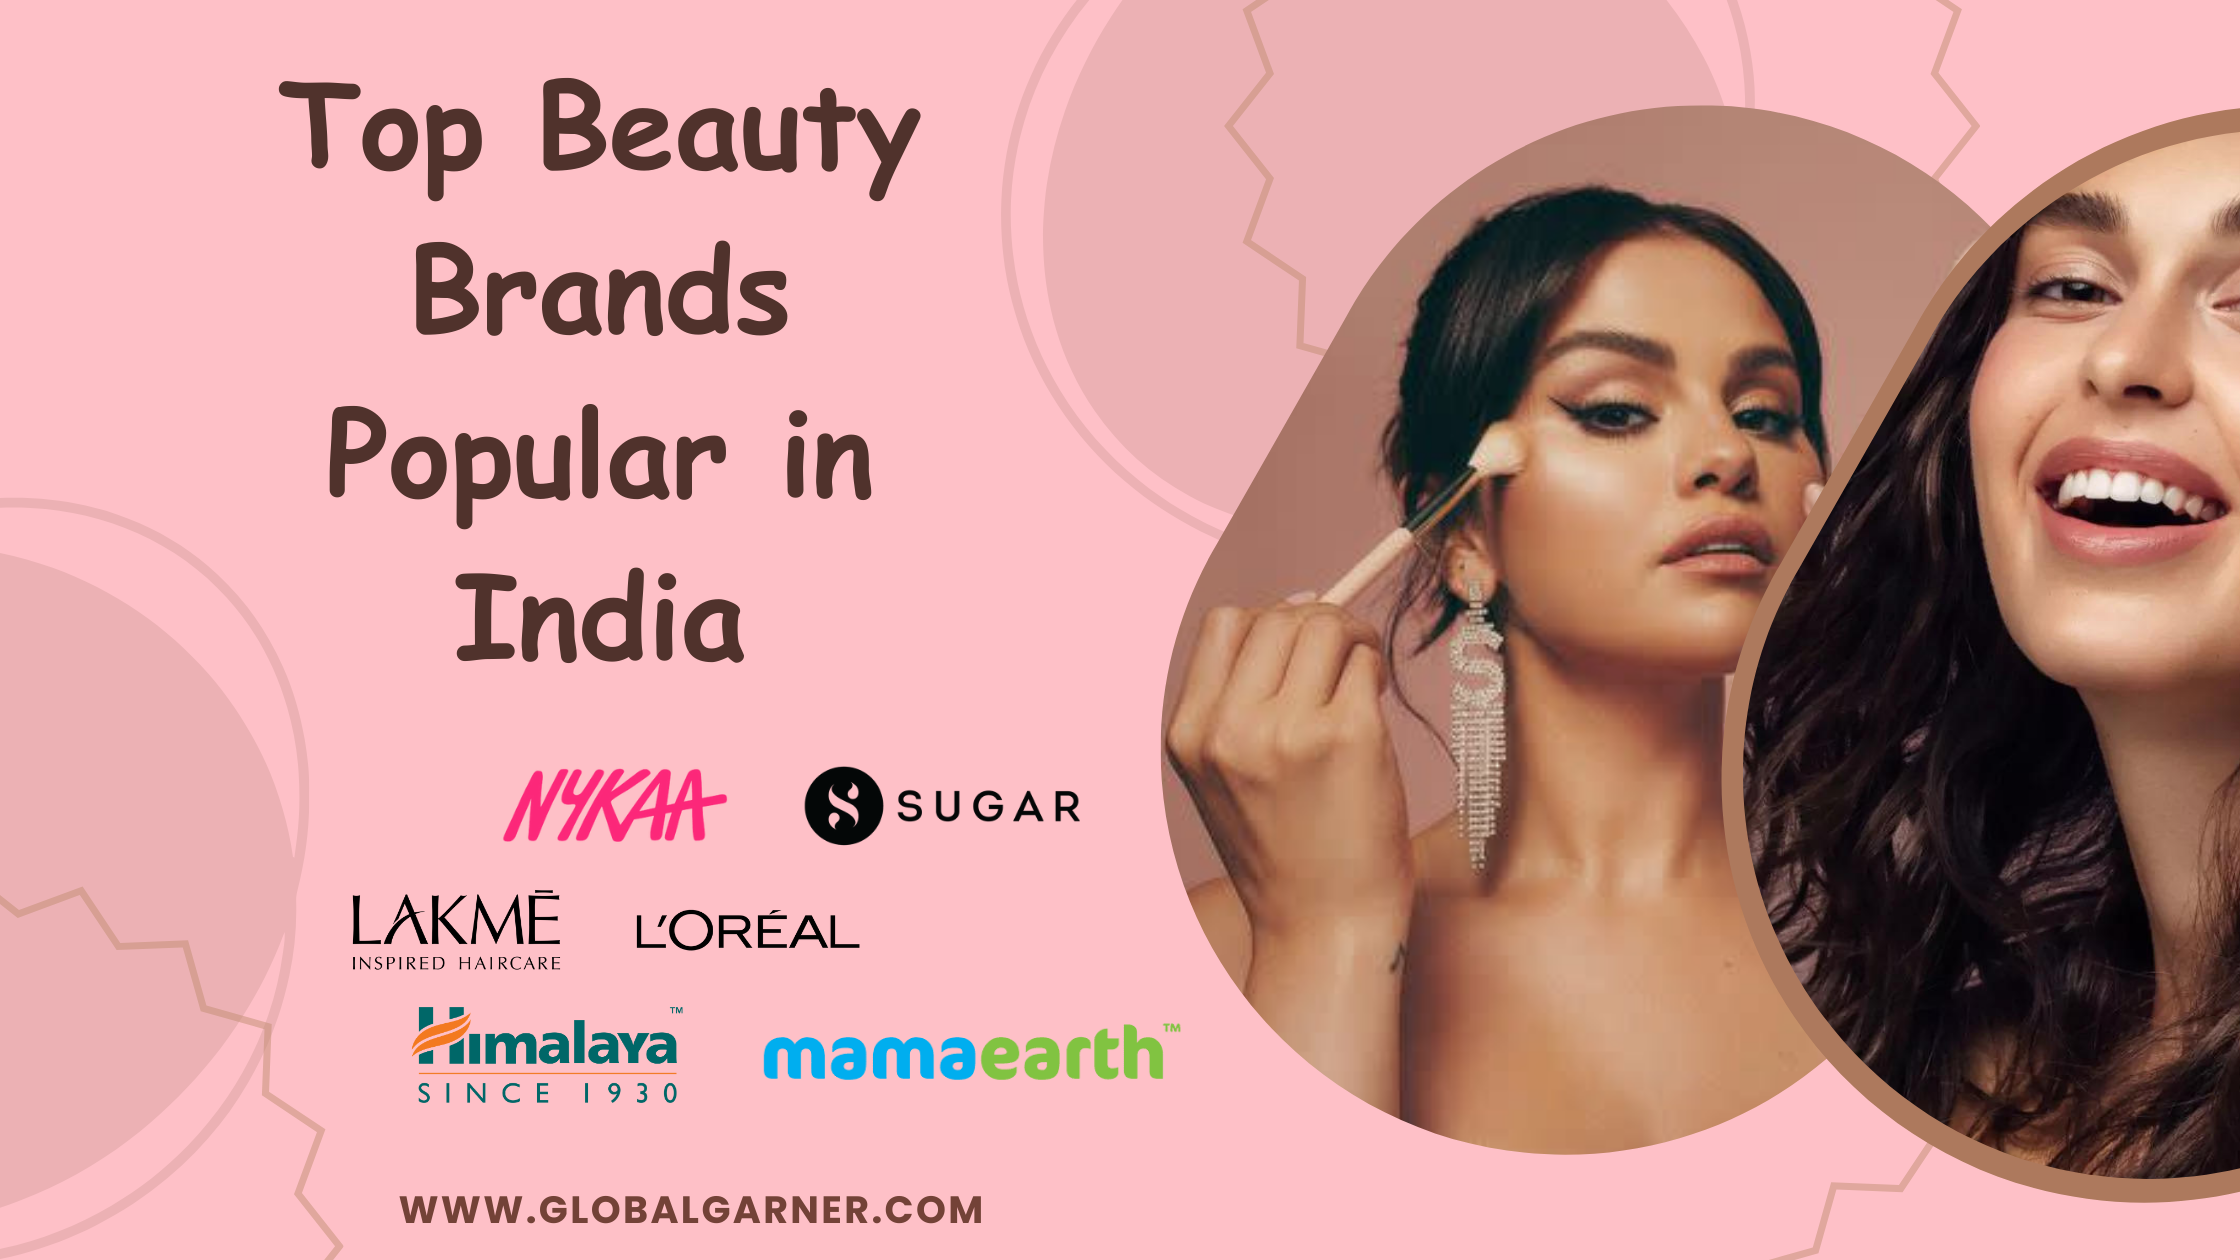 Top Beauty Brands Popular in India